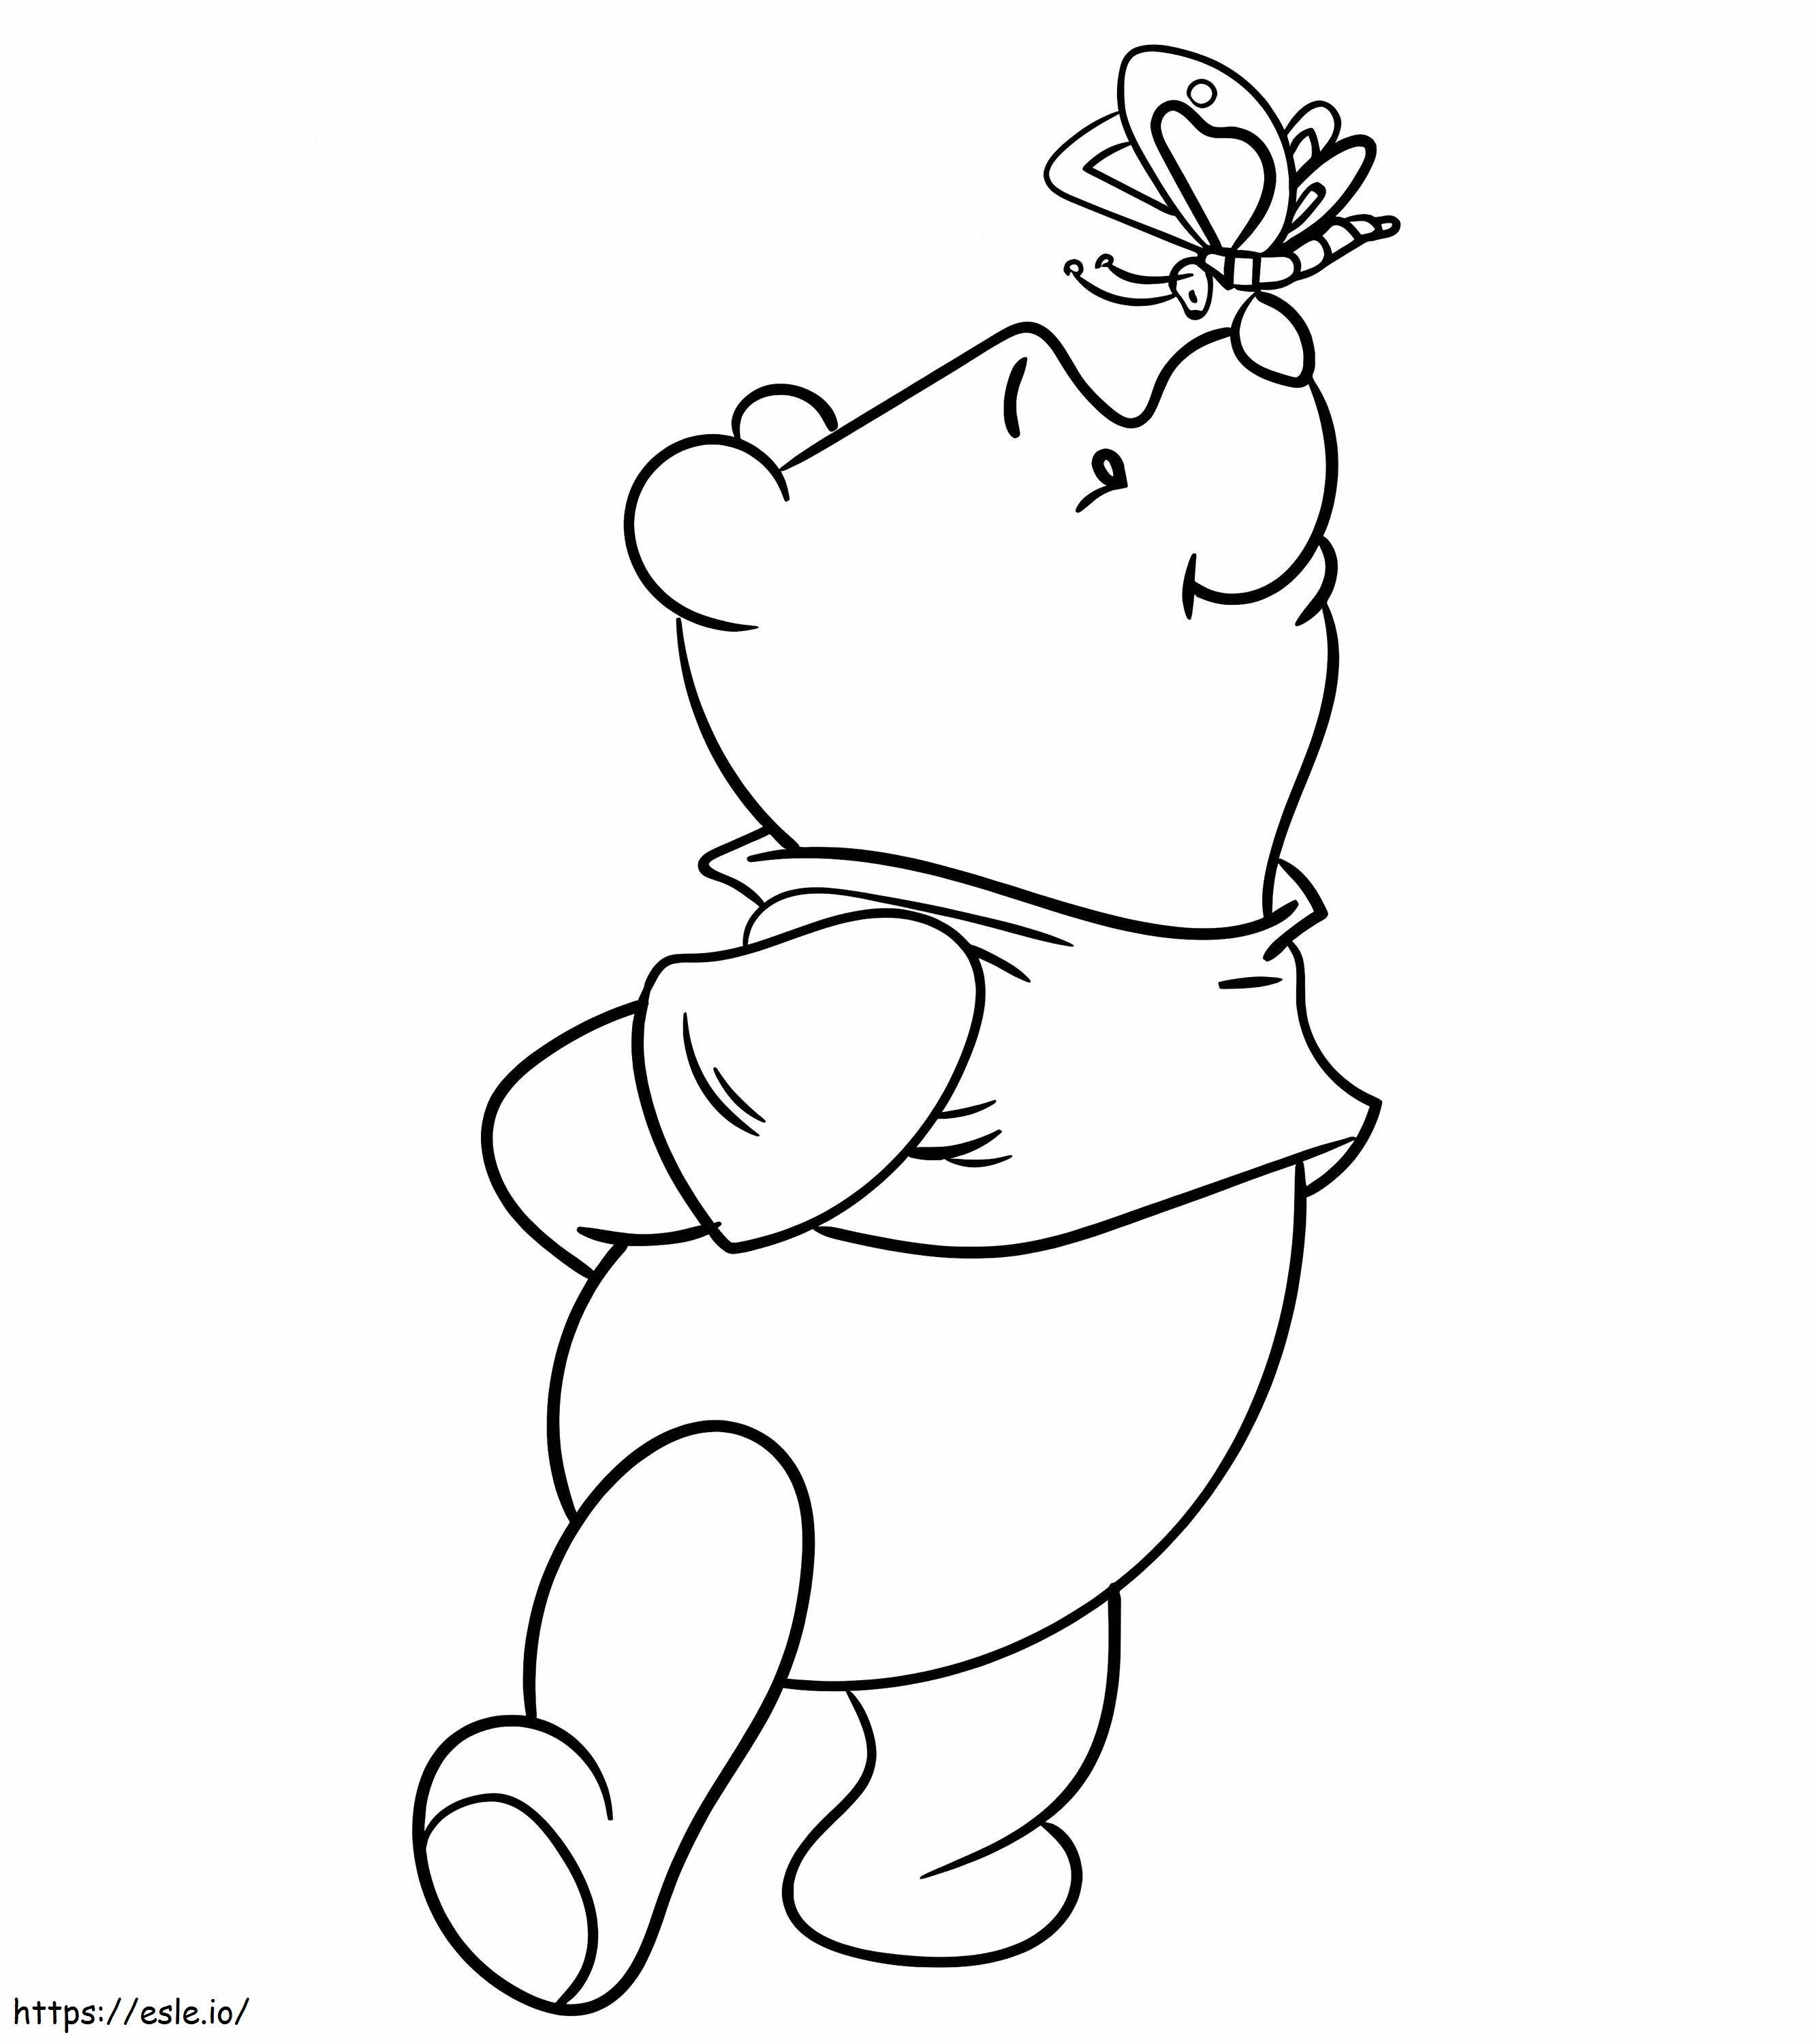 Niedlicher Winnie De Pooh mit Schmetterling ausmalbilder